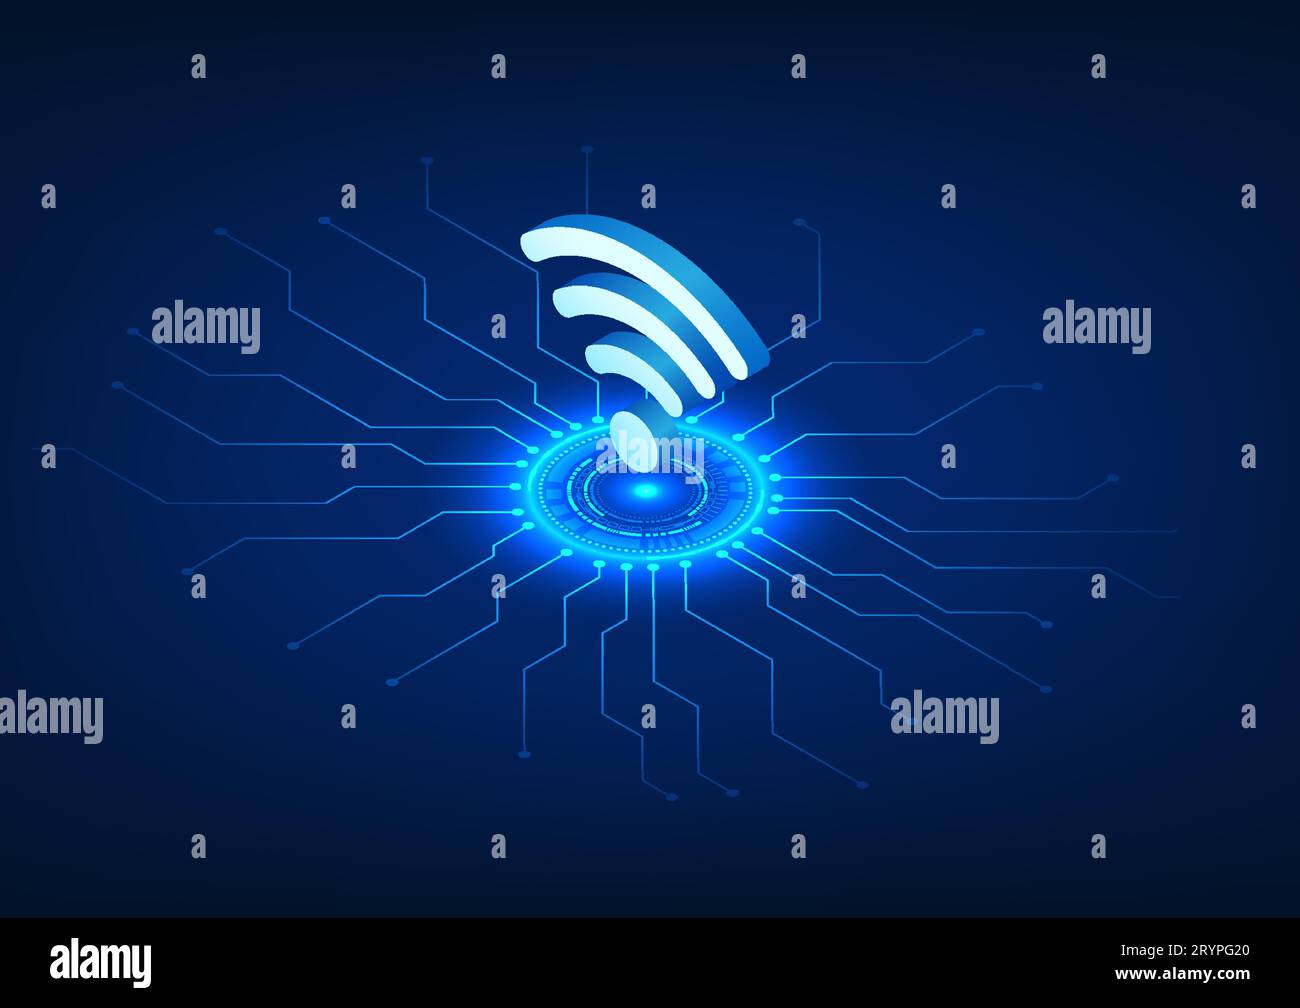 Technologie WiFi placée sur le cercle technologique avec le circuit de la technologie connectée, le Wi-Fi est une technologie qui émet un signal sans fil vers electroni Illustration de Vecteur